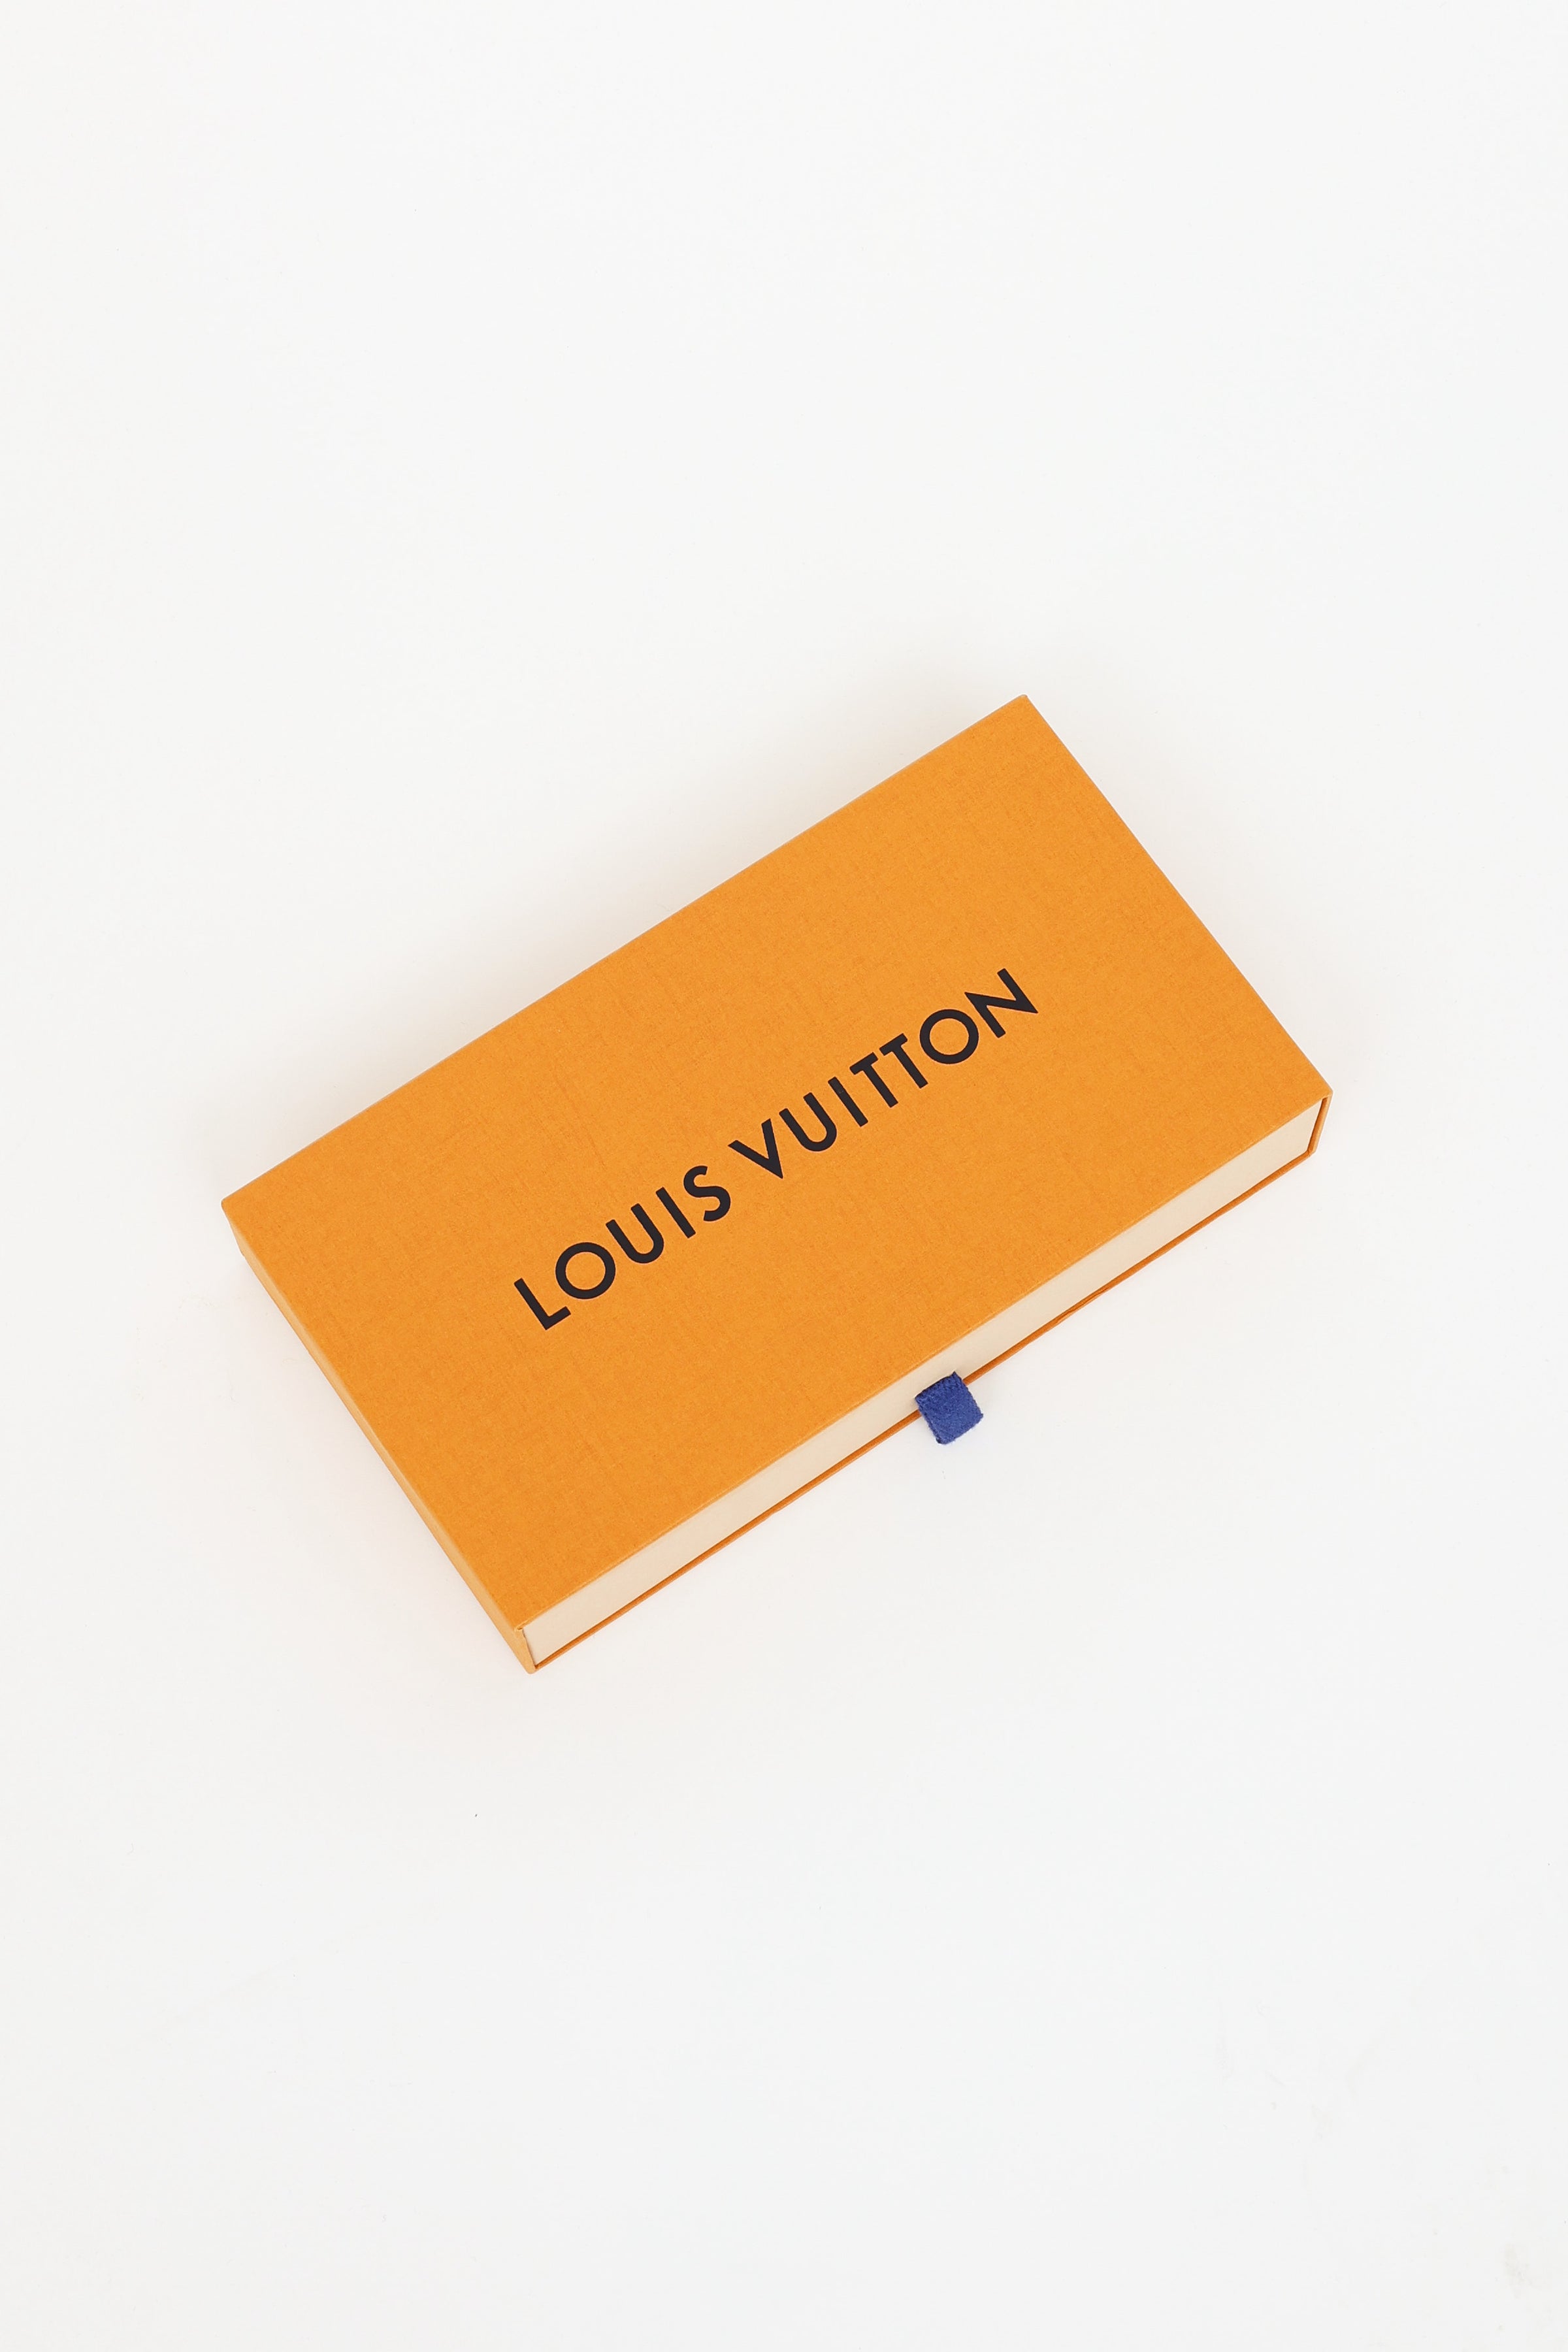 Louis Vuitton // 2019 Epi Cherry Berry Félicie Pochette Bag – VSP